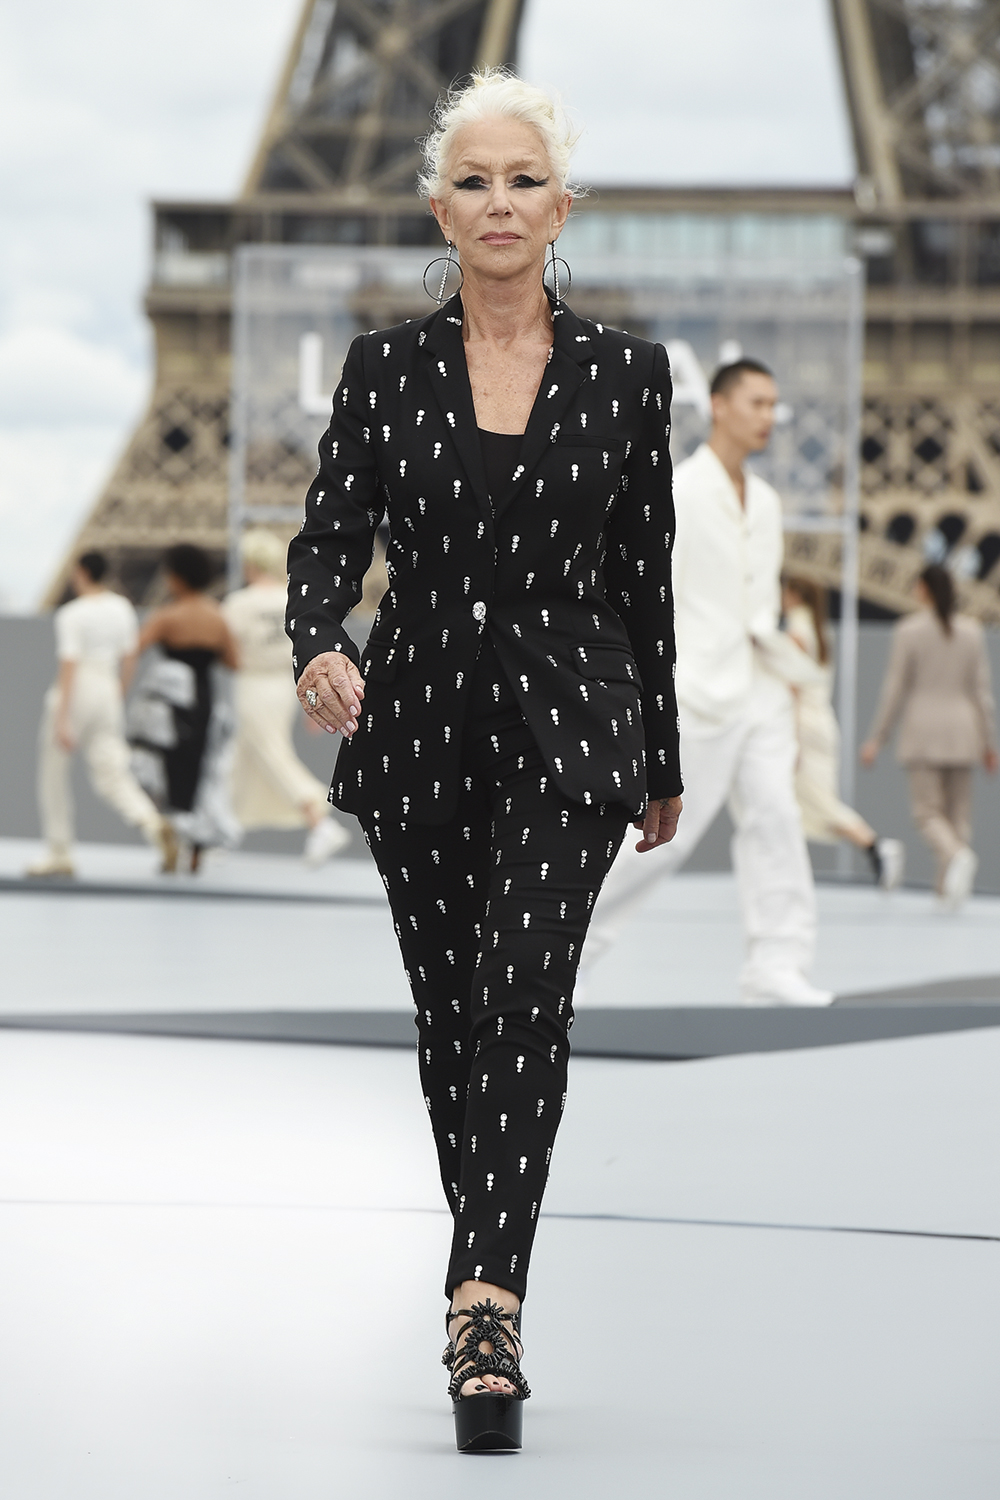 HELEN MIRREN, 76 ANOS - A atriz inglesa abriu o desfile da L’Oréal na mais recente Semana de Moda de Paris, mostrando que o mundo fashion está atento às mudanças da sociedade e deseja ampliar a diversidade nas passarelas -